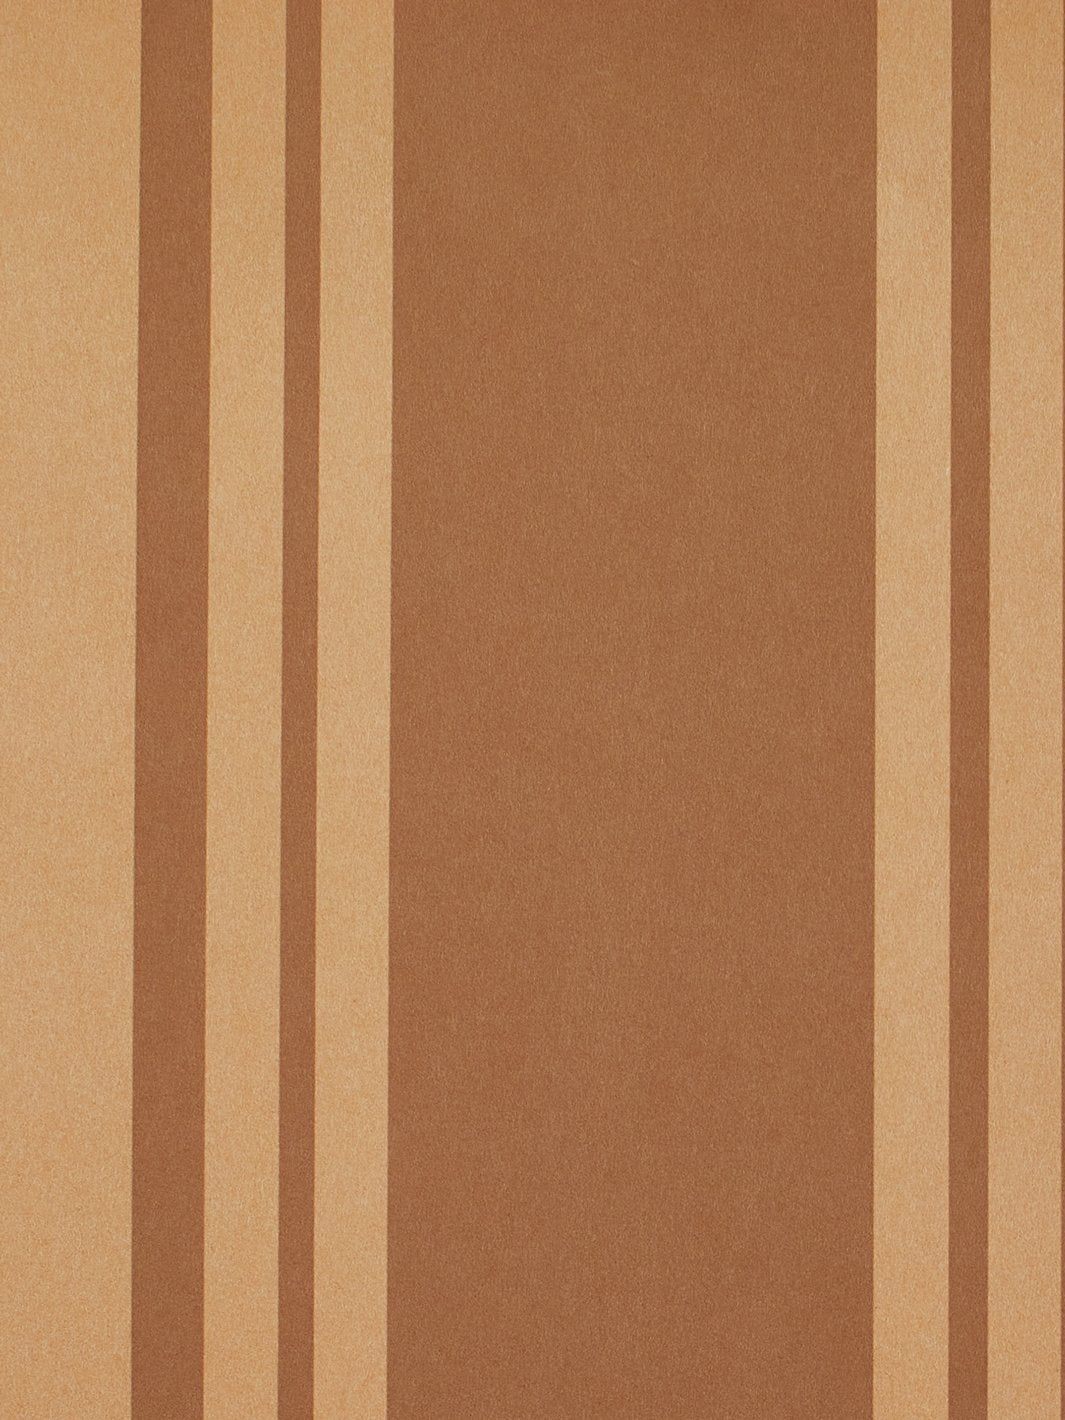 'Yorkshire Stripe' Kraft' Wallpaper by Wallshoppe - Leather